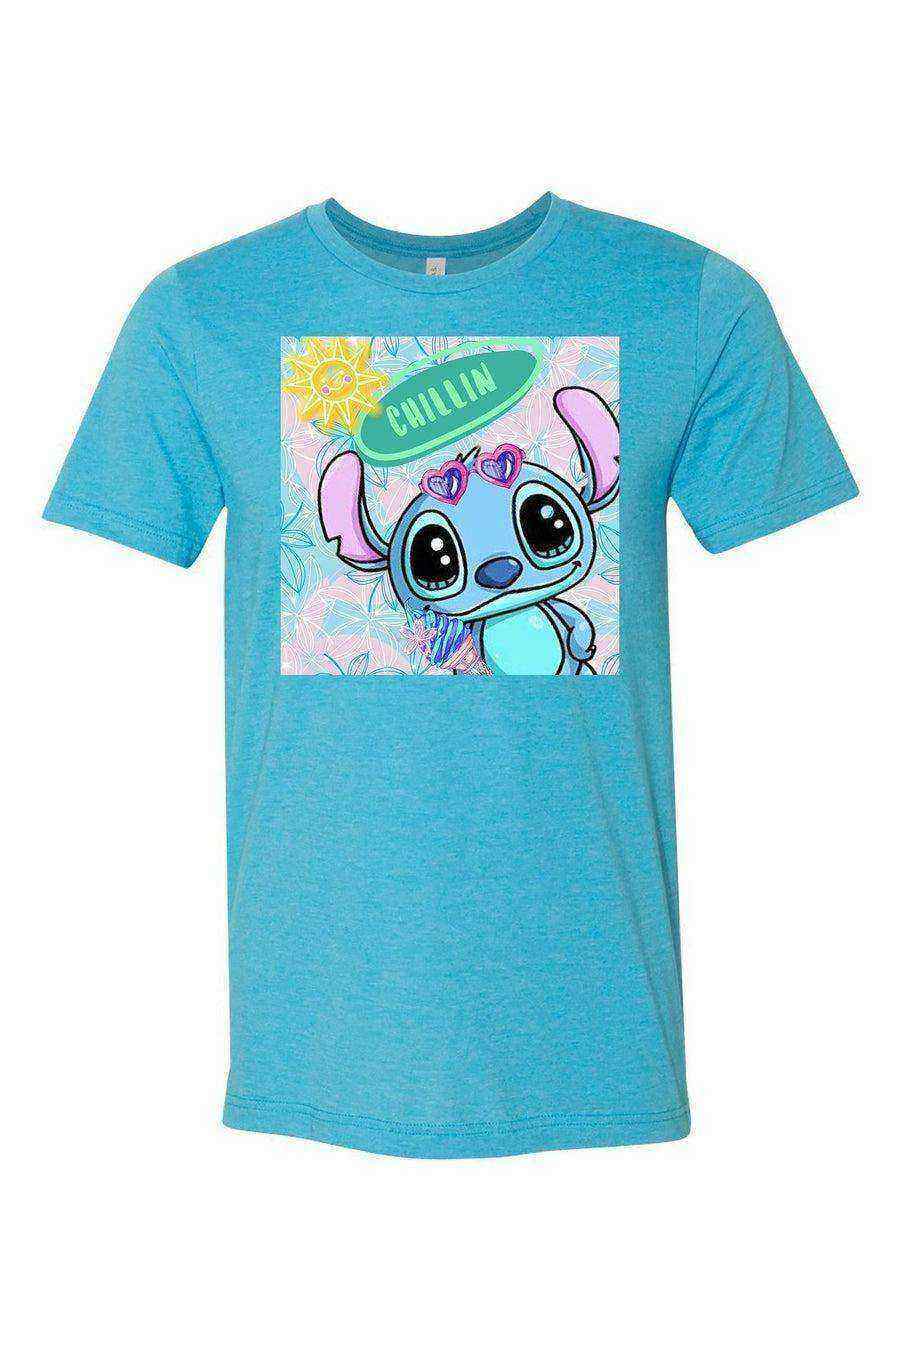 Stitch Summer Shirt | Experiment 626 Shirt - Dylan's Tees